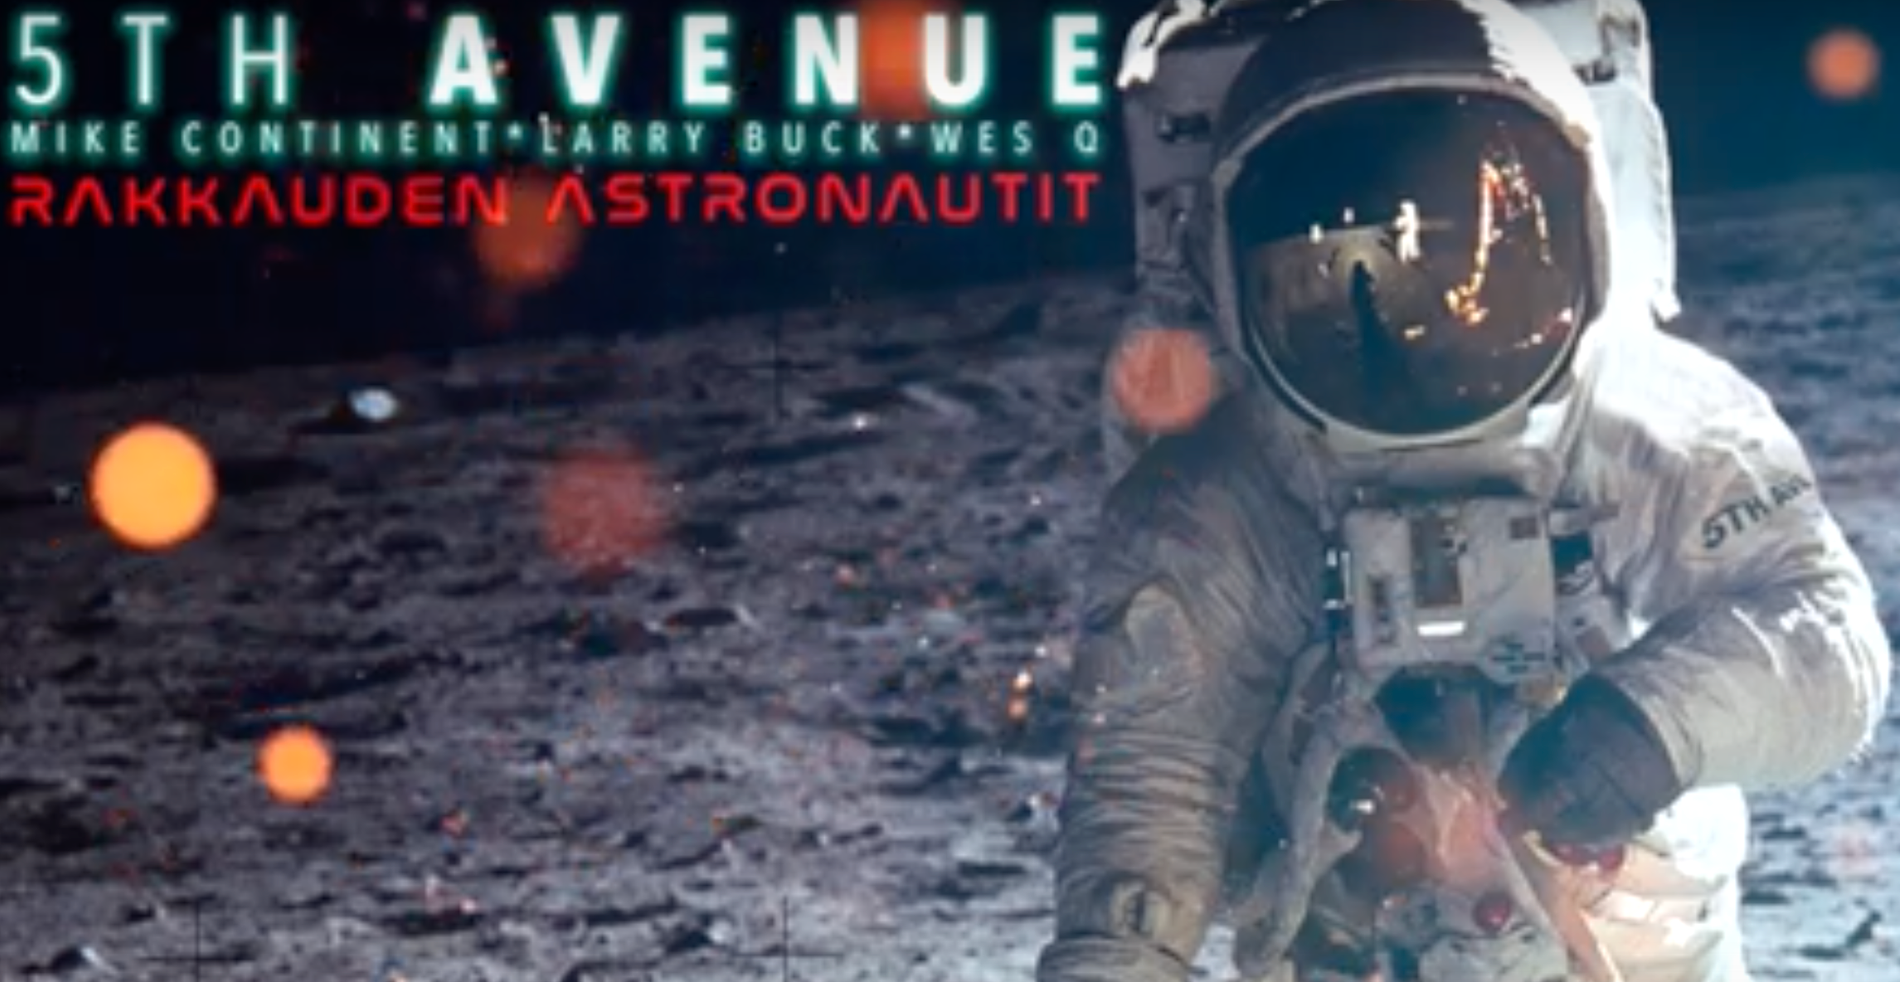 Skärmbild från bandet 5th avenue’s låt ”Rakkauden Astronautit”